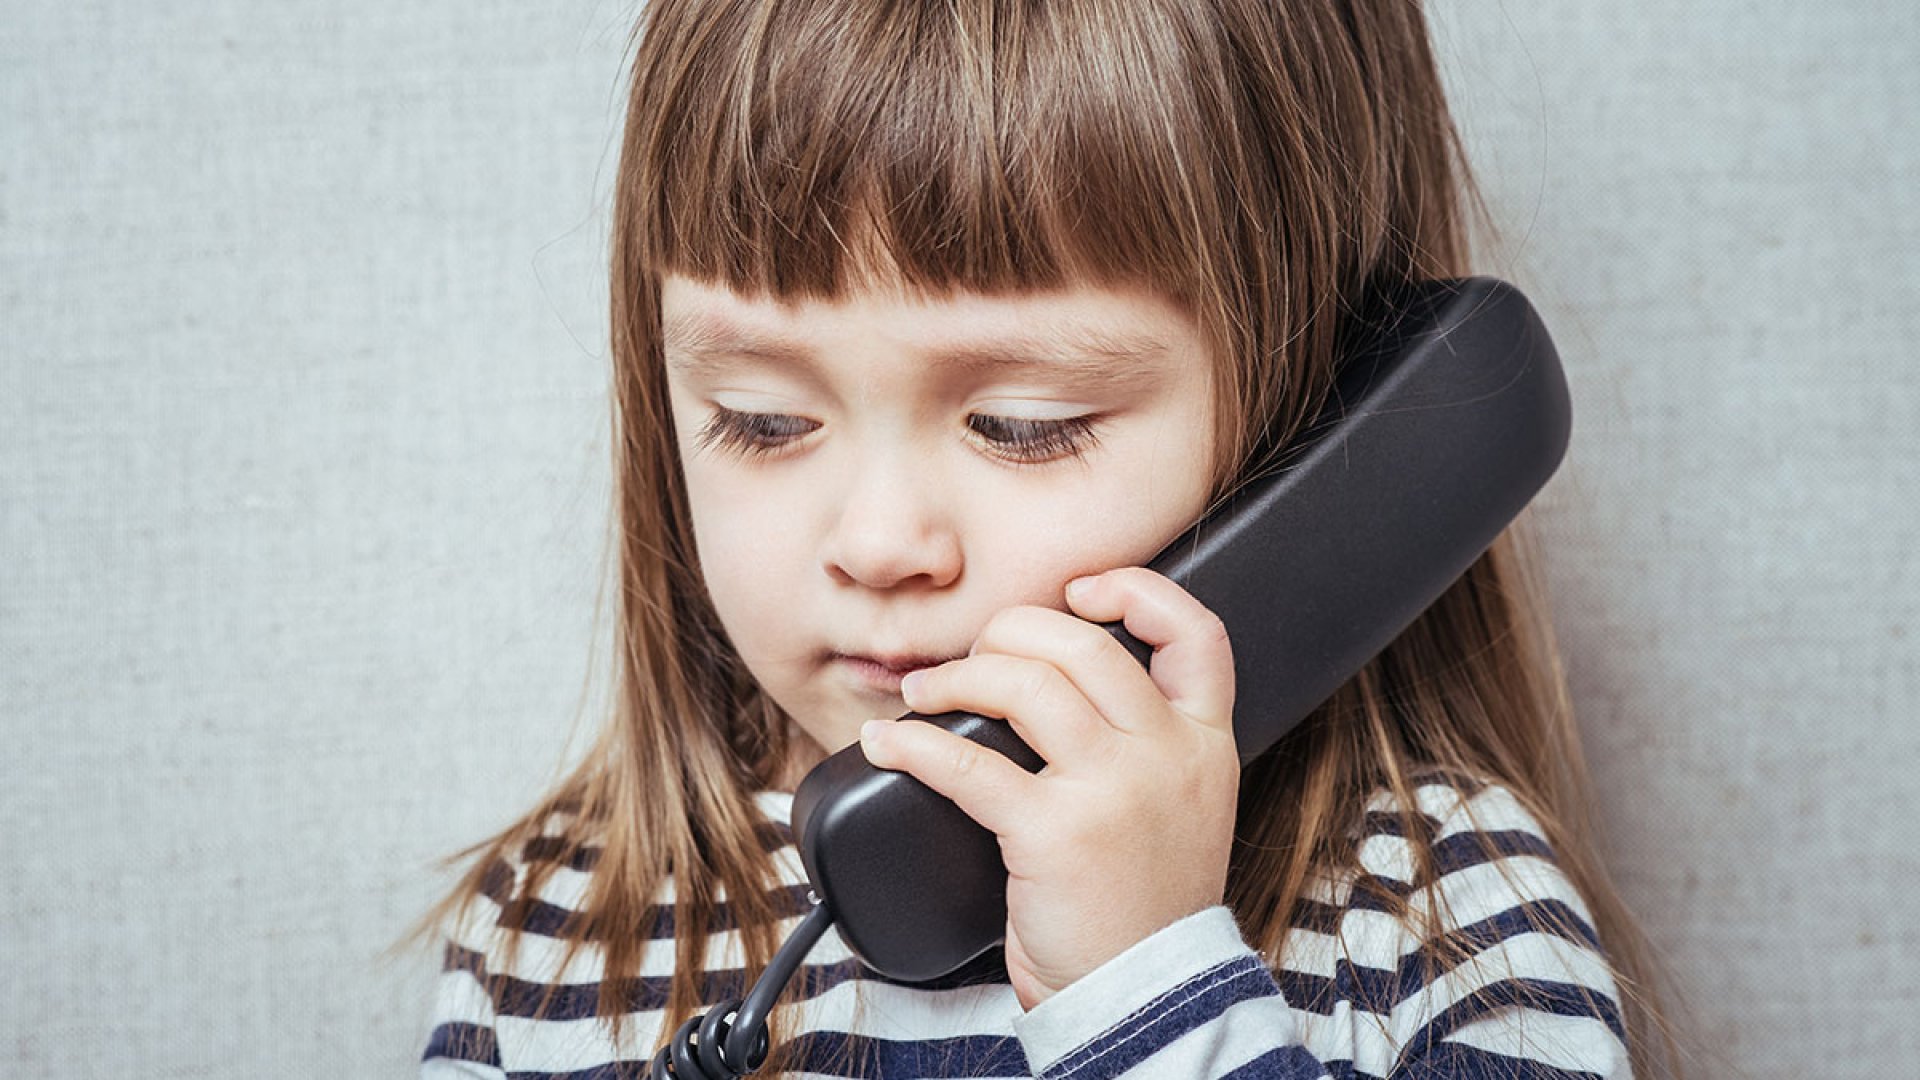 Разговор по телефону для ребенка. Ребенок звонит по теле. Подросток с телефоном. Телефонный разговор для детей.